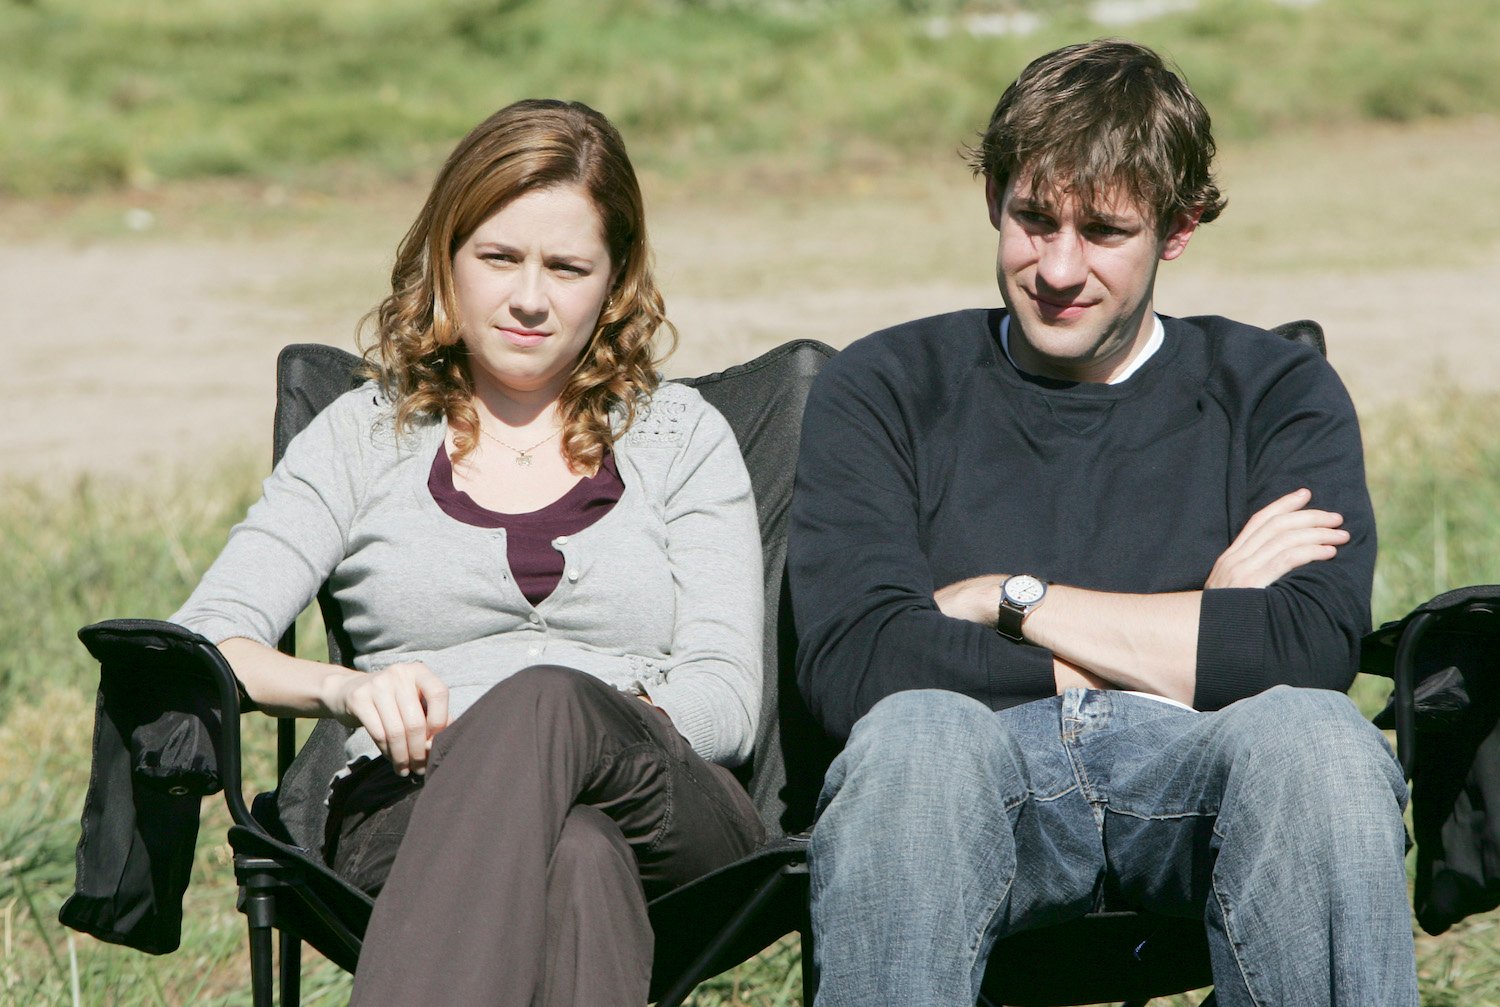 'The Office' stars Jenna Fischer as Pam Beesly and John Krasinski as Jim Halpert sit outside.